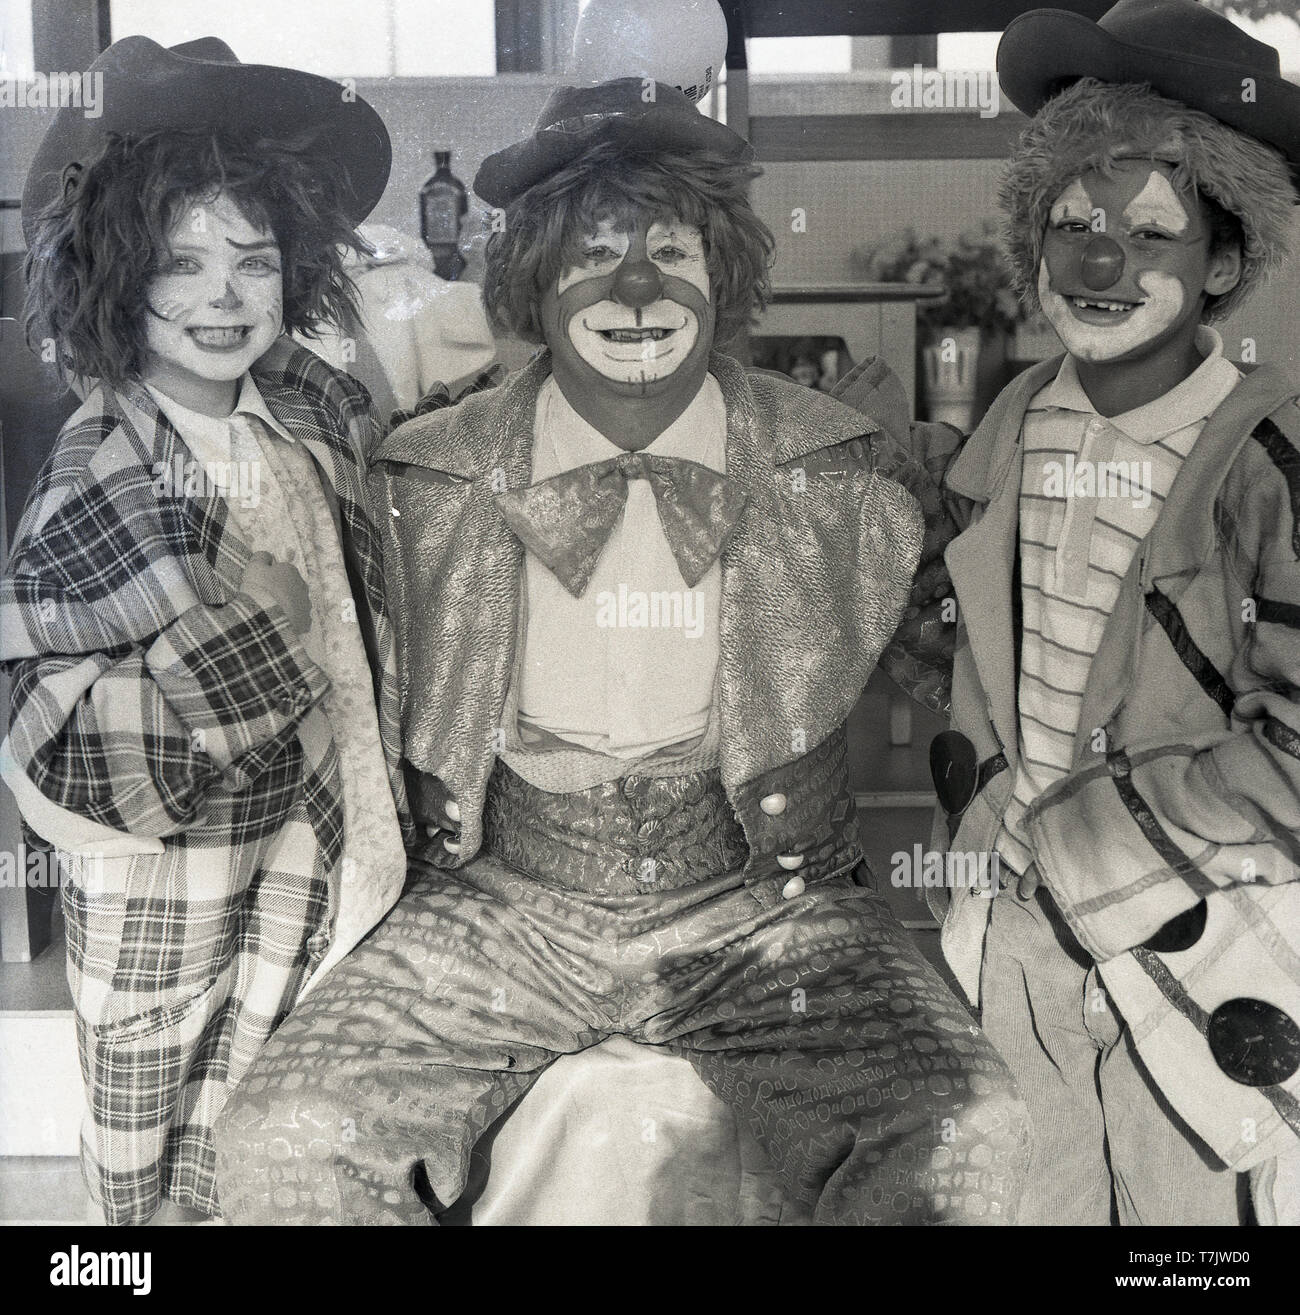 Anni sessanta, storico, un circo clown in visita ad una scuola elementare seduto accanto a con i giovani della scuola i bambini sia indossando abiti fantasiosi o abiti divertenti e con le loro facce dipinte come un clown, Inghilterra, Regno Unito. Foto Stock